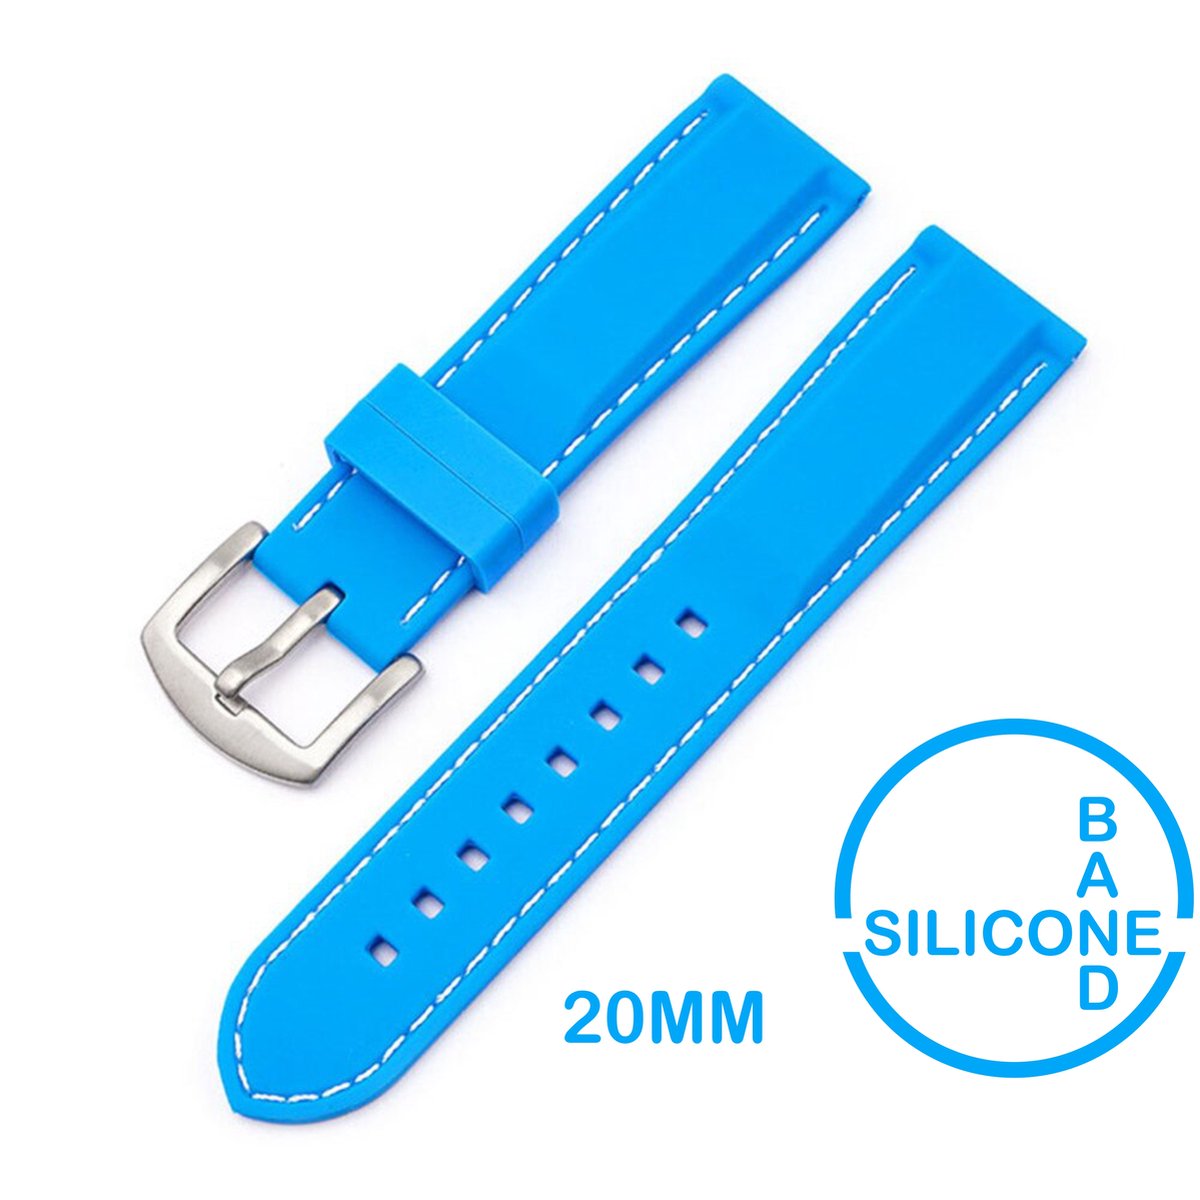 20mm Rubber Siliconen horlogeband Lichtblauw met witte stiksels passend op o.a Casio Seiko Citizen en alle andere merken - 20 mm Bandje - blauw - licht blauw - Horlogebandje horlogeband